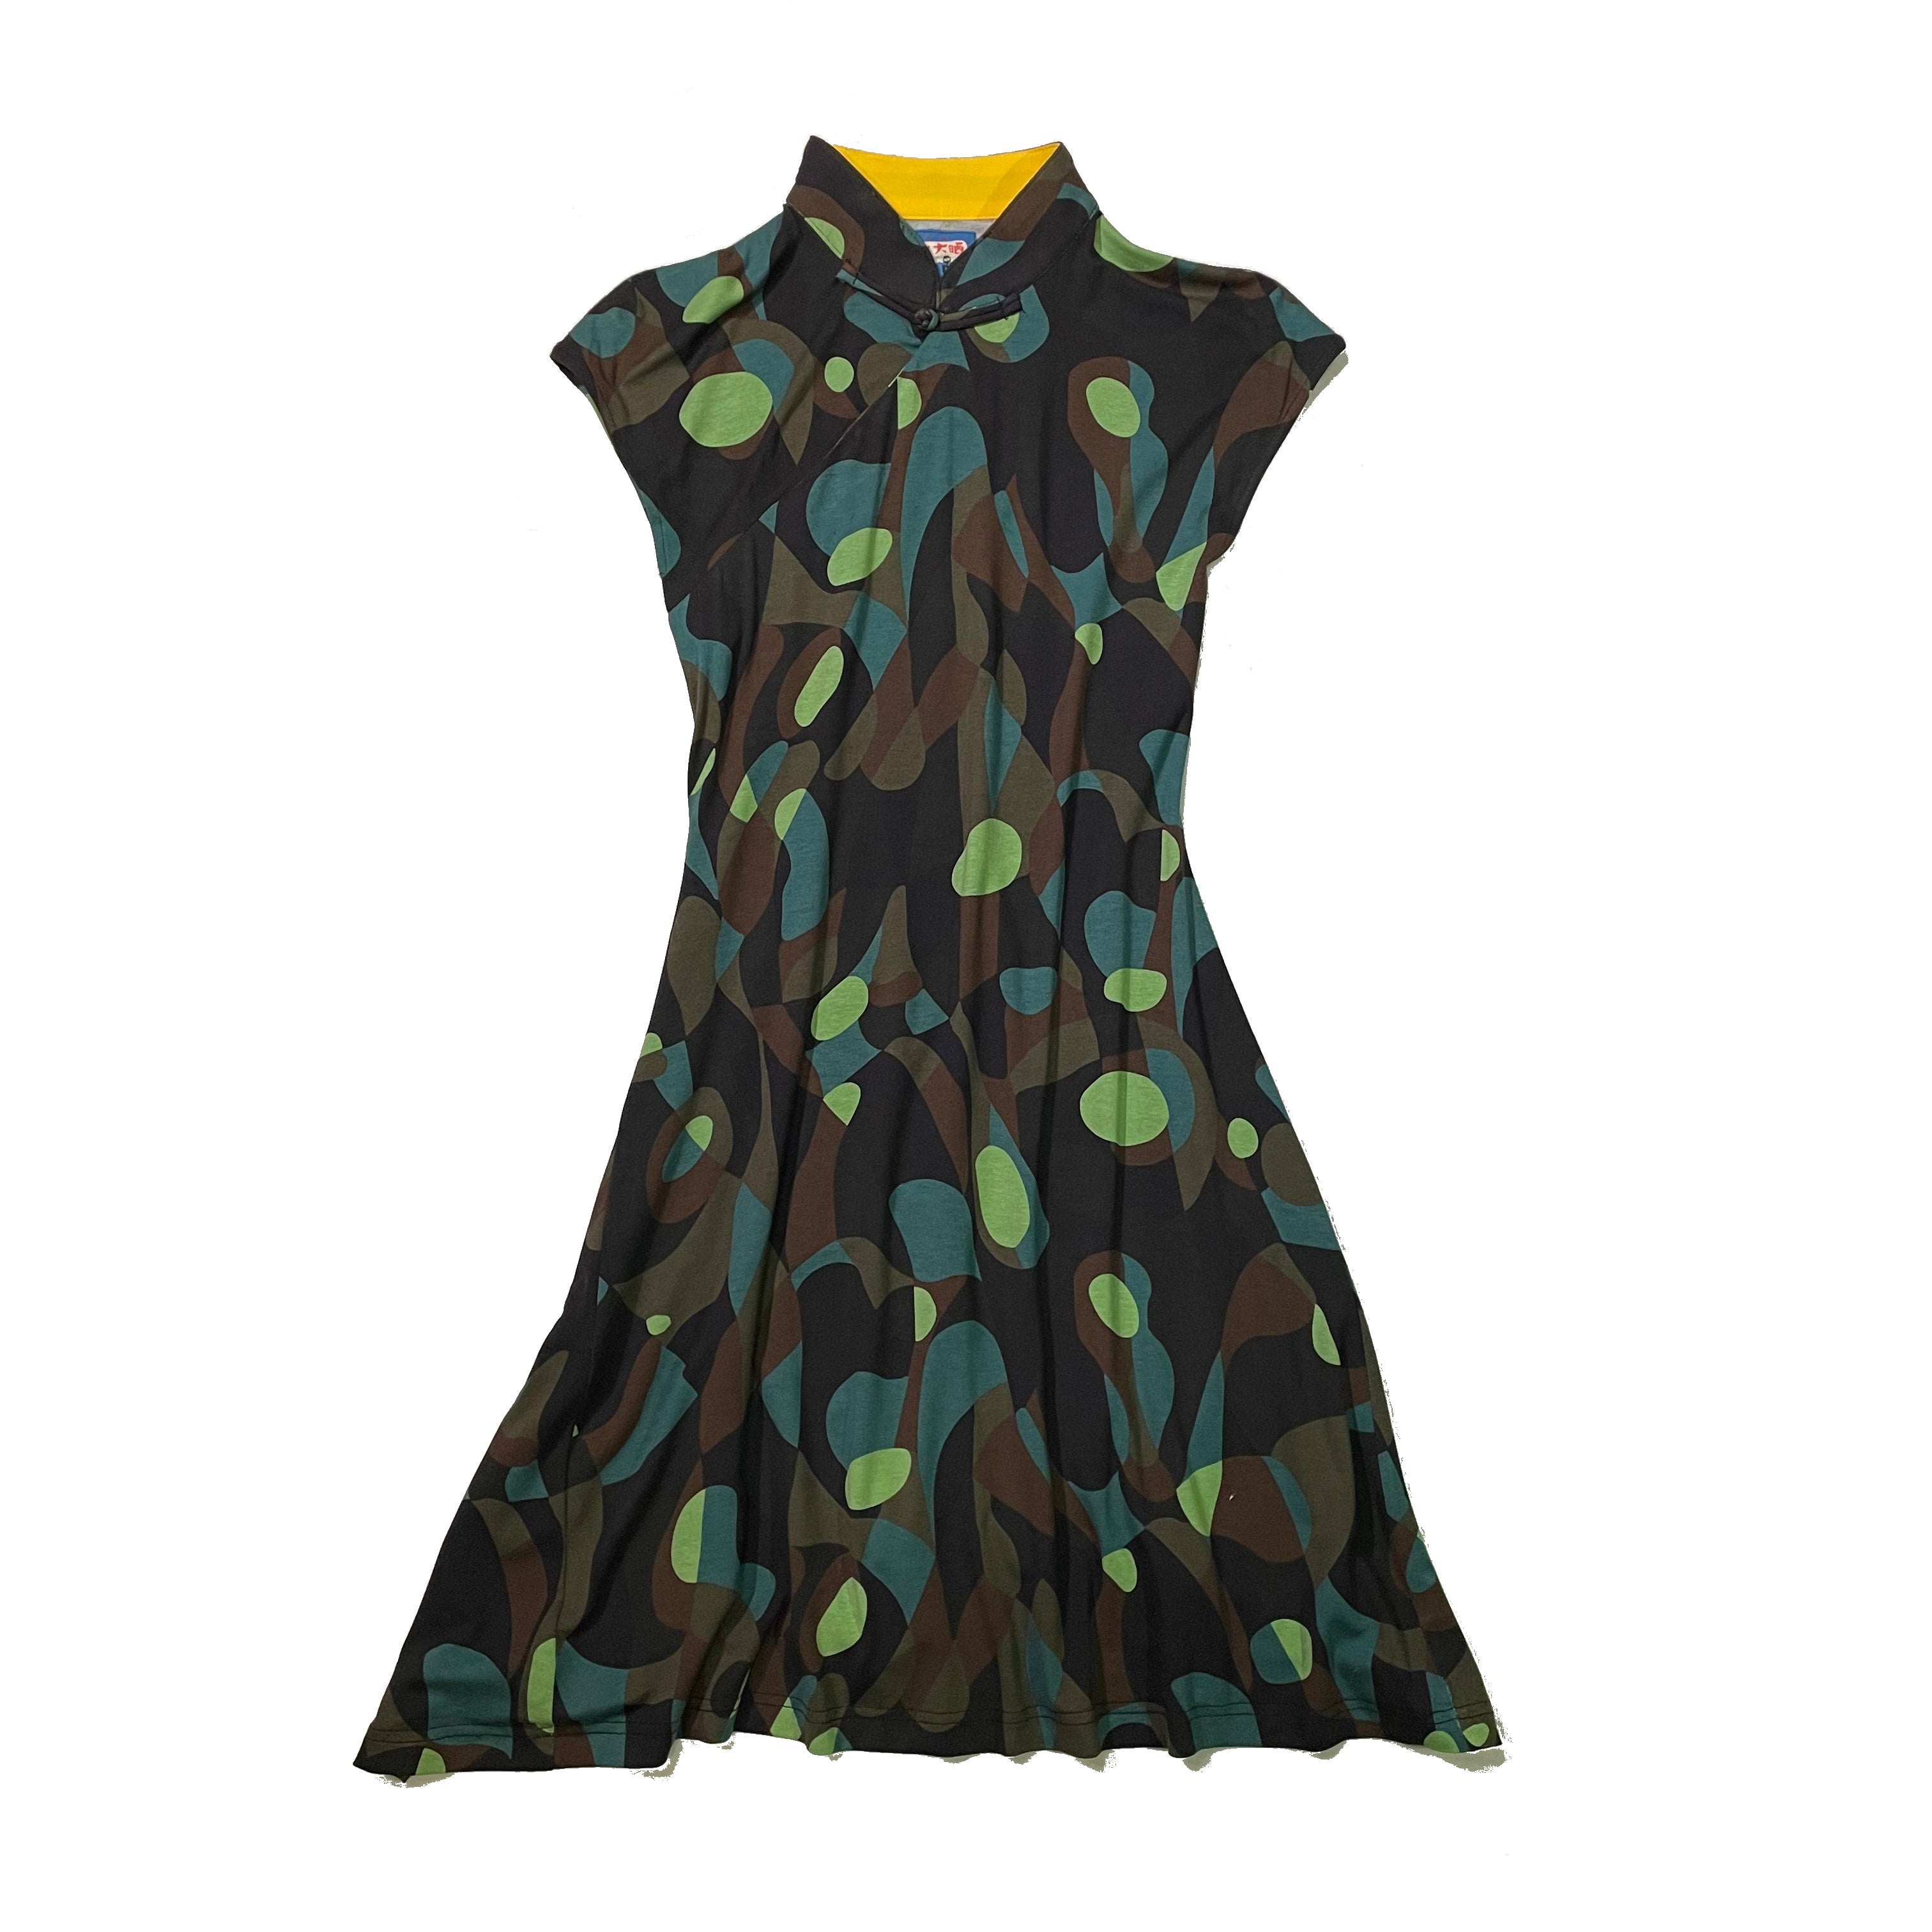 Printed Qipao Dress, Green Abstract